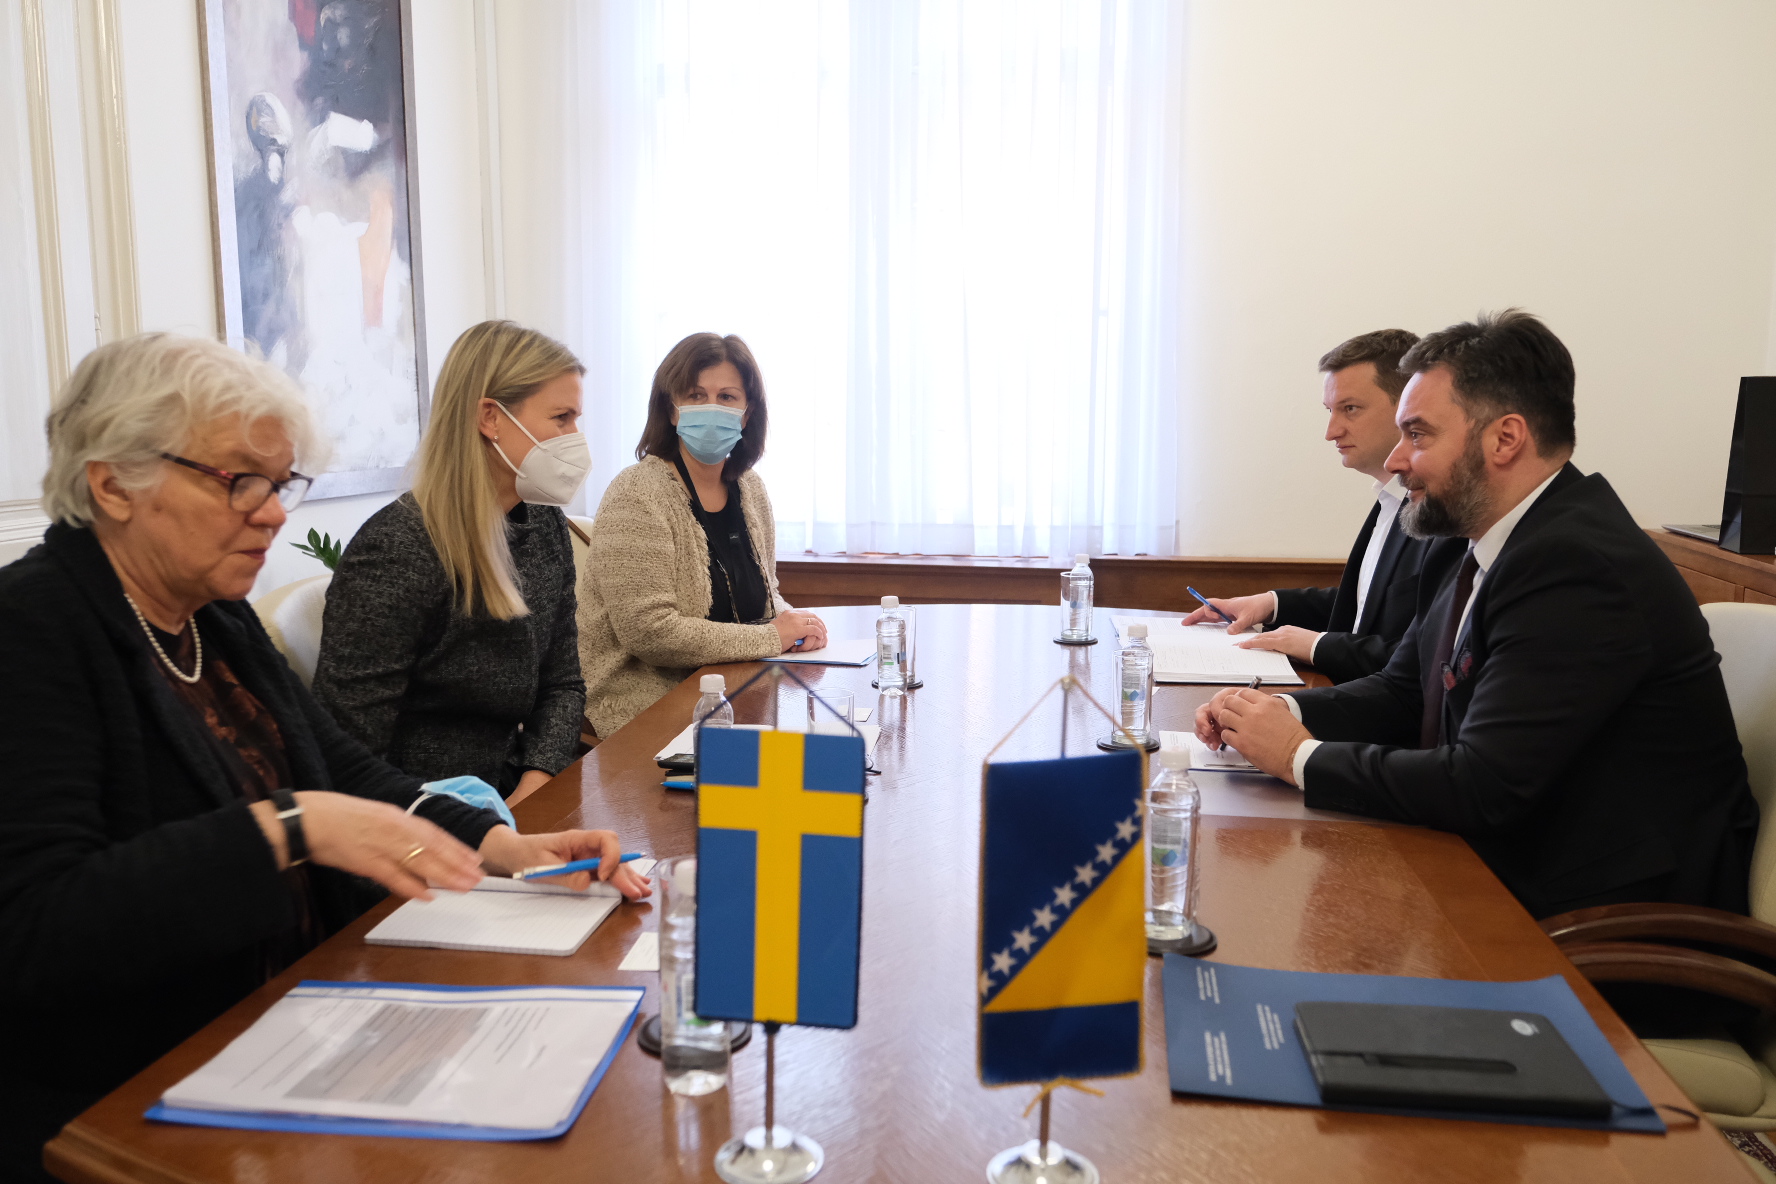 Picture for Министар Кошарац и амбасадорка Стромквист о политичким темама и наставку сарадње БиХ и Шведске